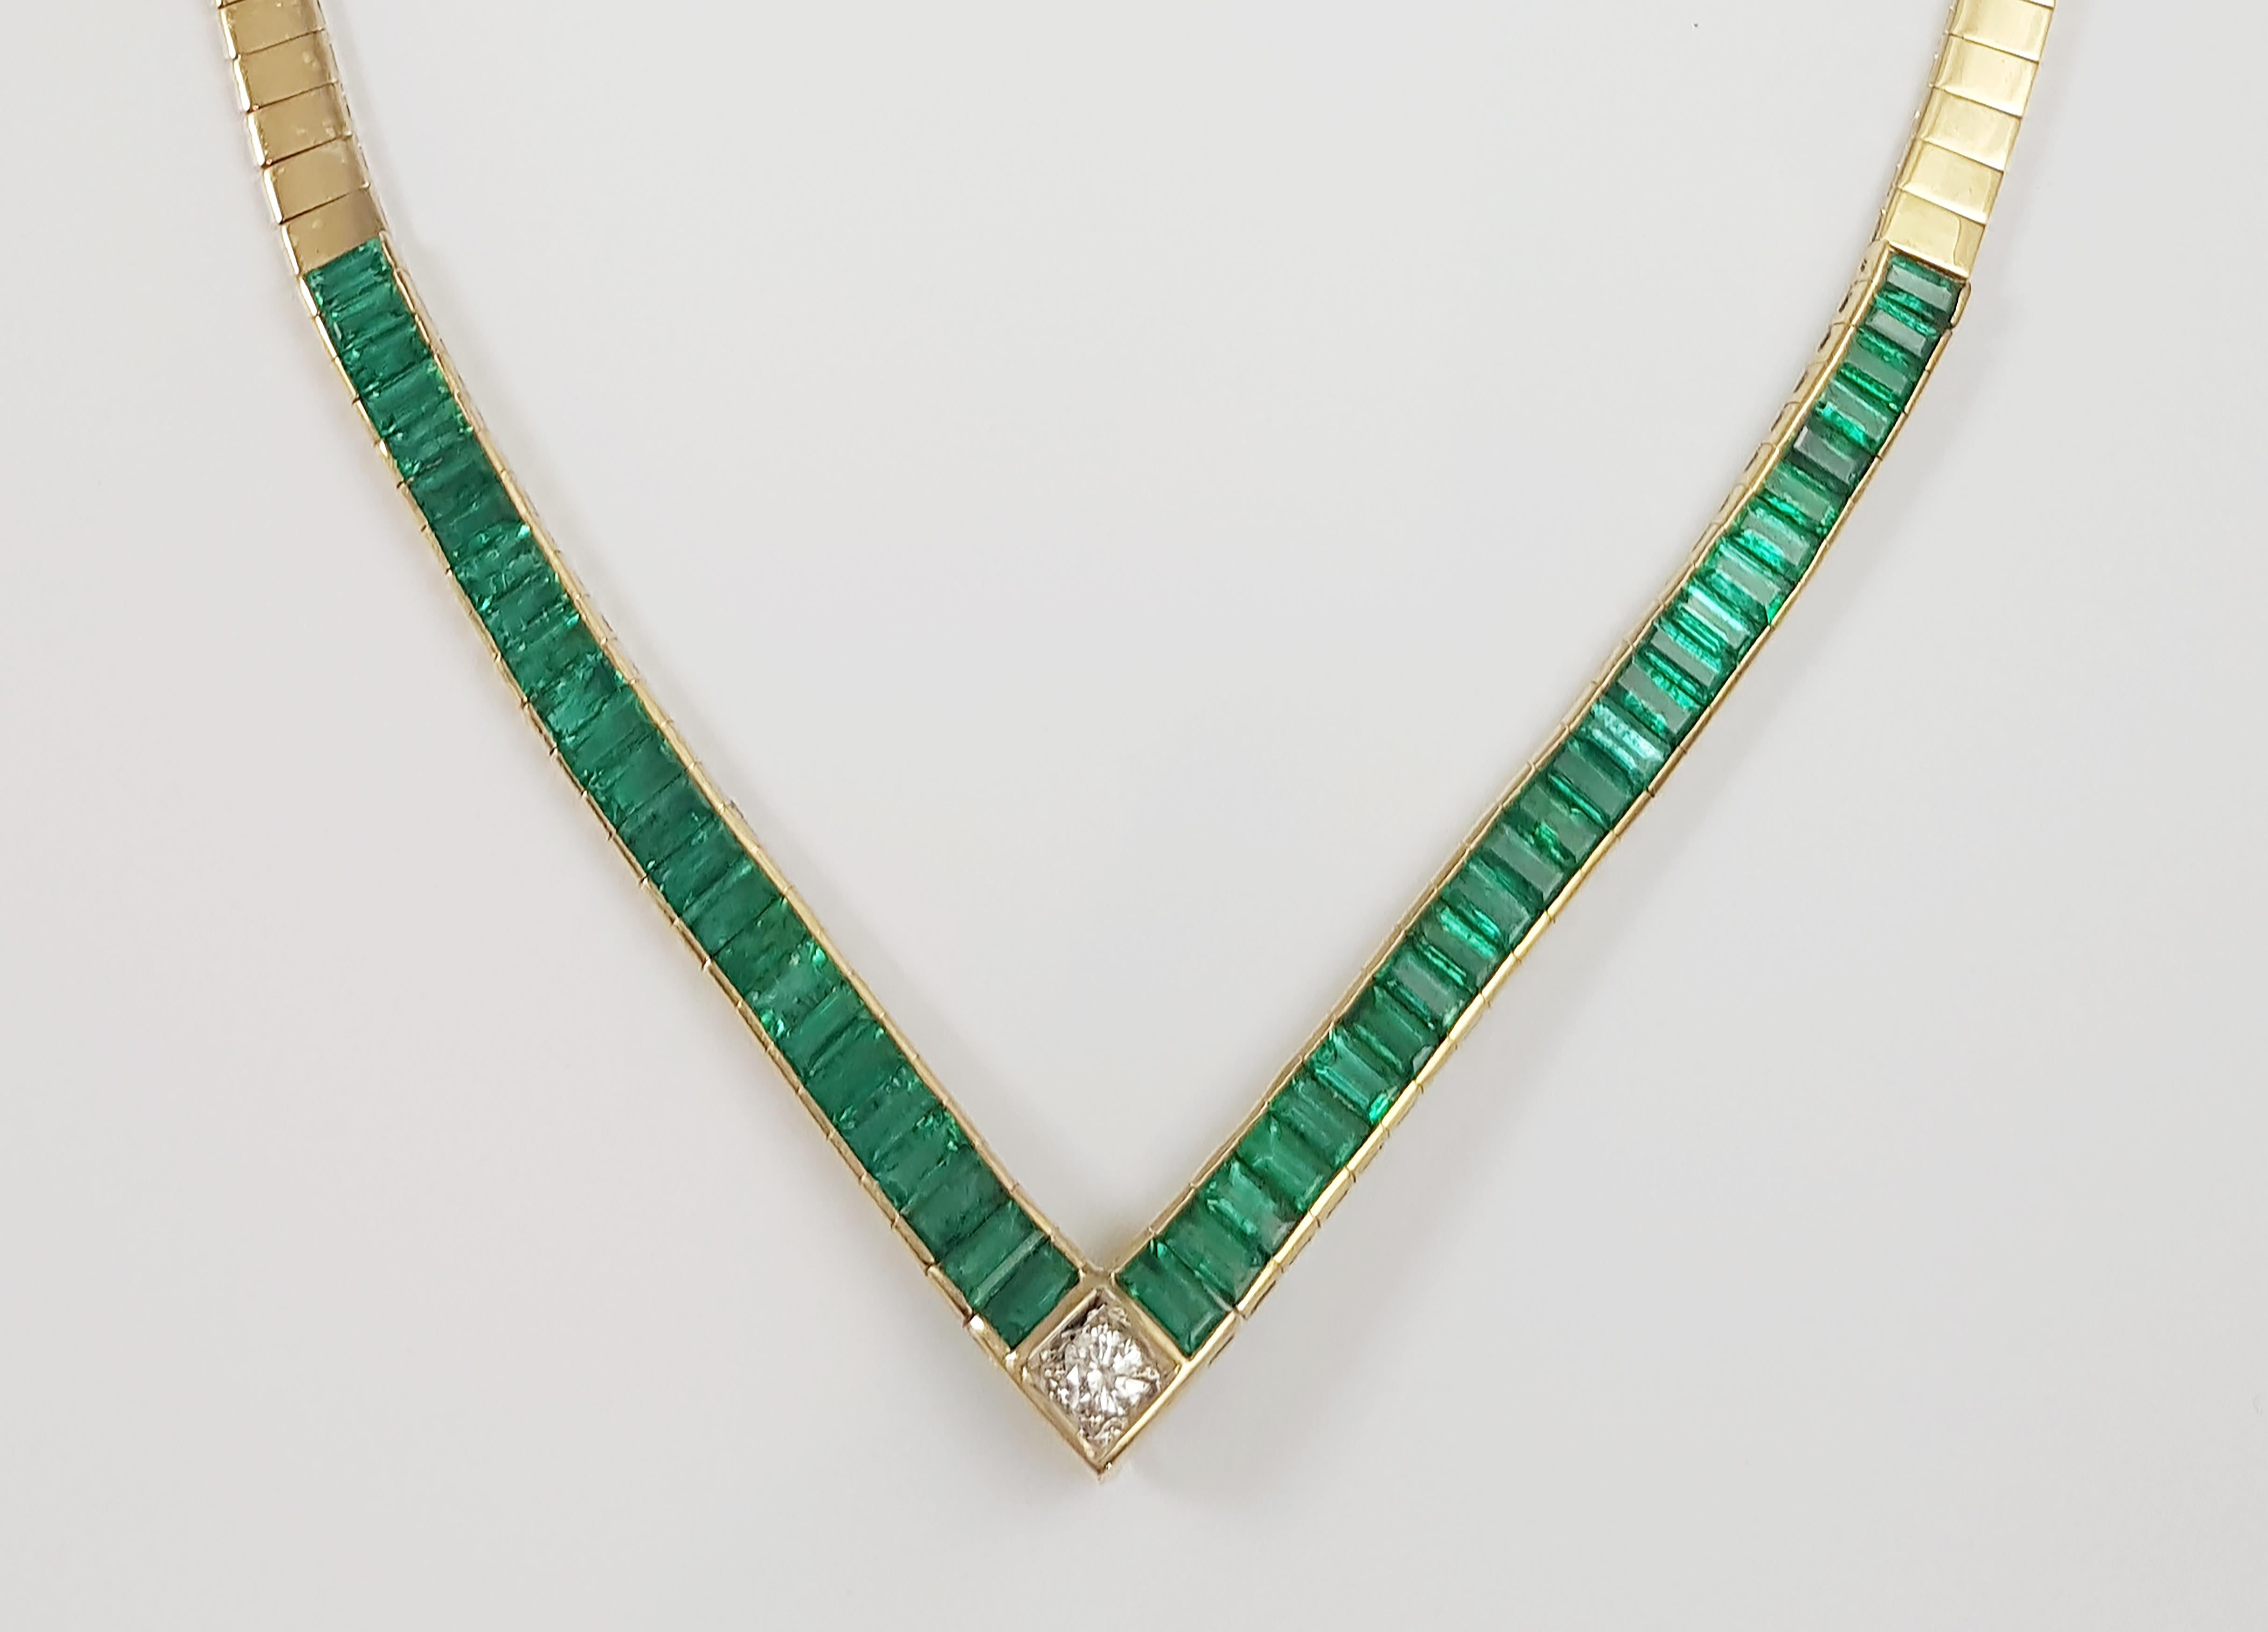 Smaragd 12,39 Karat mit Diamant 0,26 Karat Halskette in 18 Karat Goldfassung

Breite:  0.6 cm 
Länge: 46.0cm
Gesamtgewicht: 38,92 Gramm

